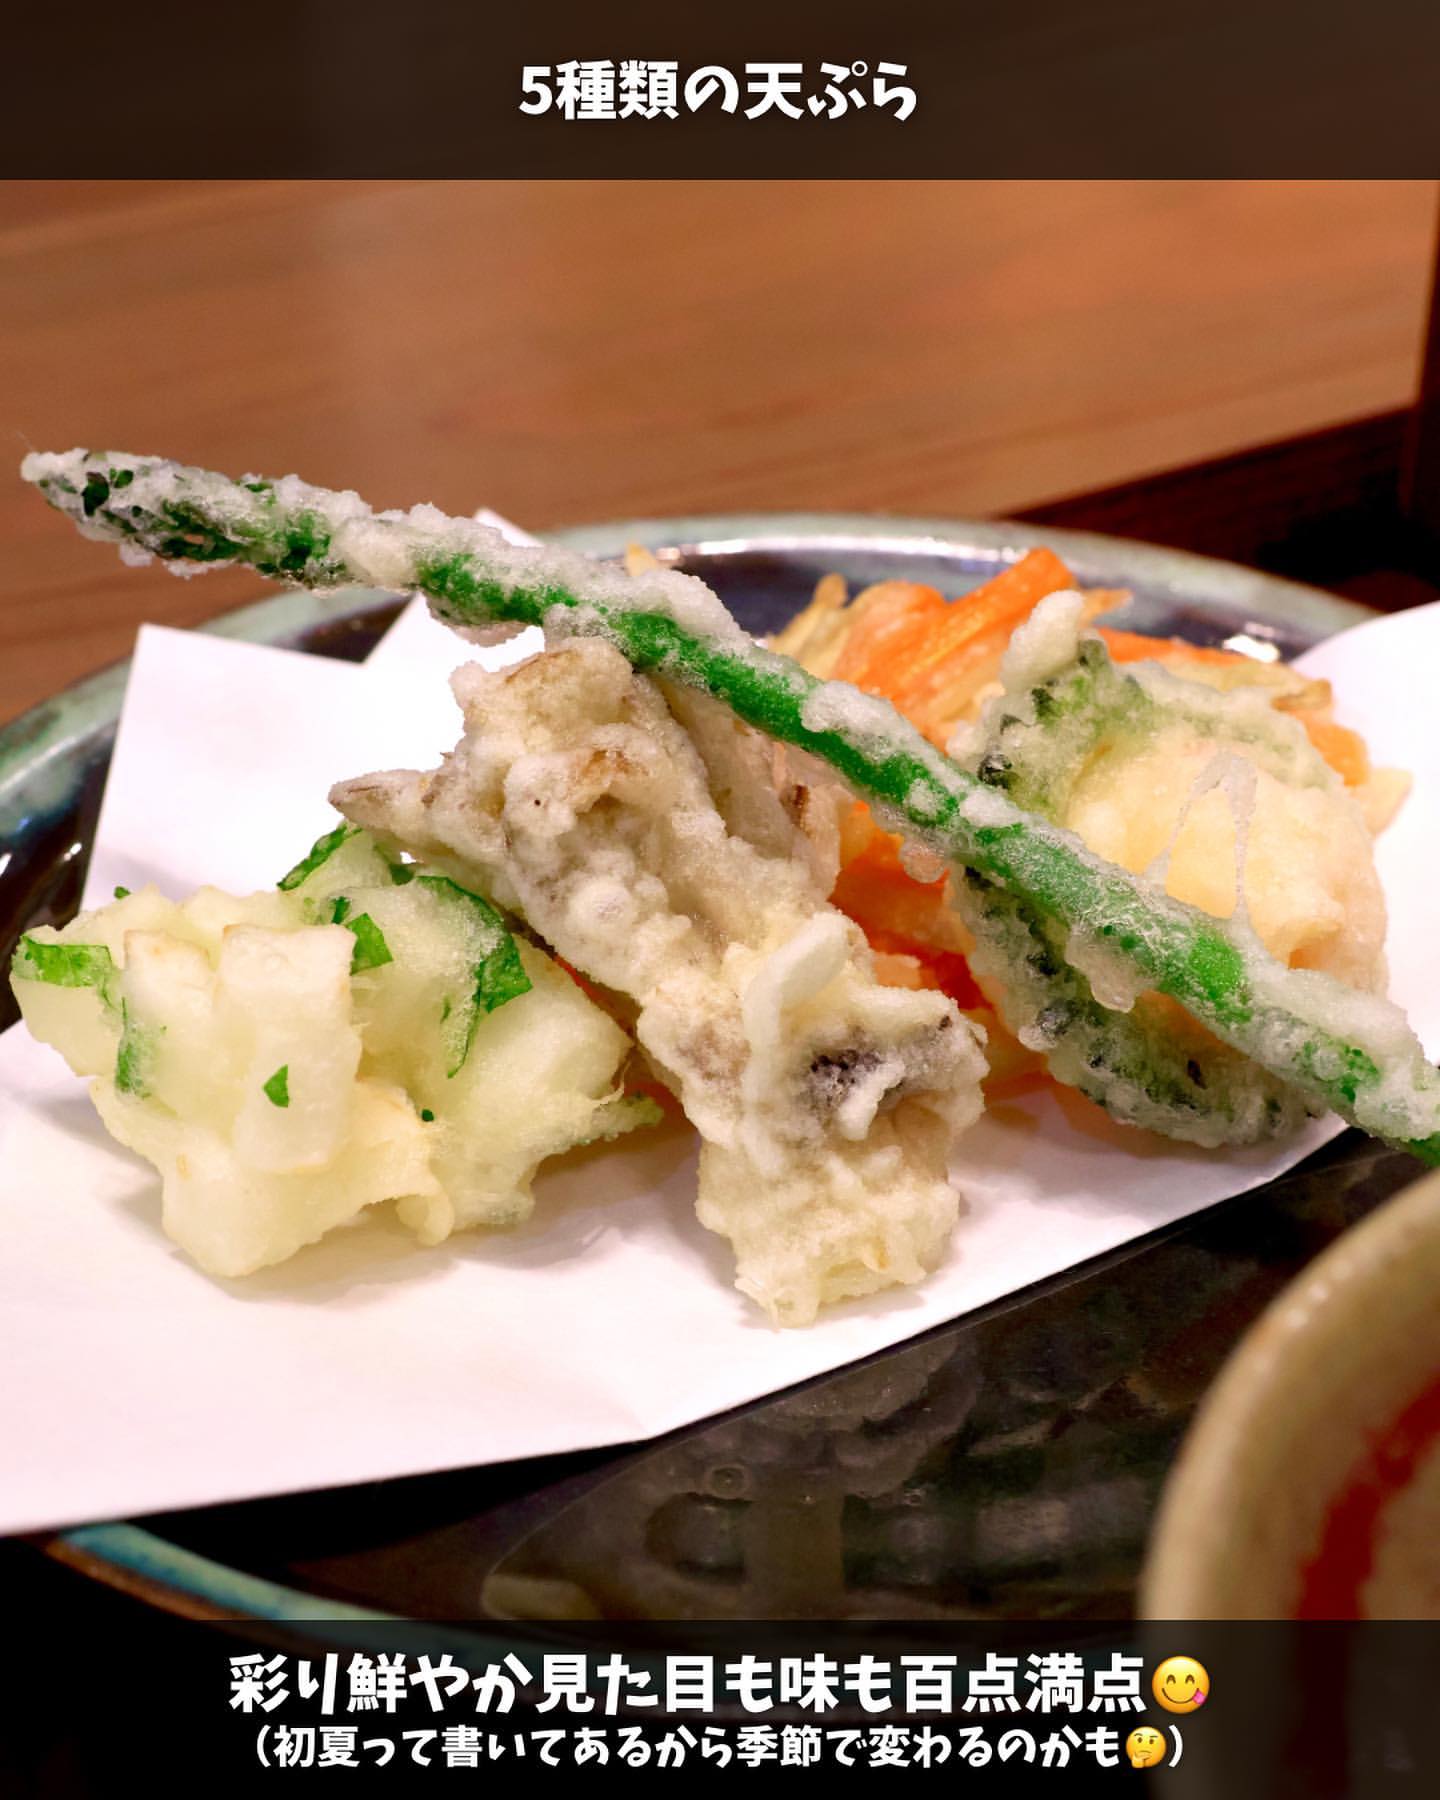 【弘前市・蕎麦カフェ 道草】彩り天ぷらと蕎麦せいろセット